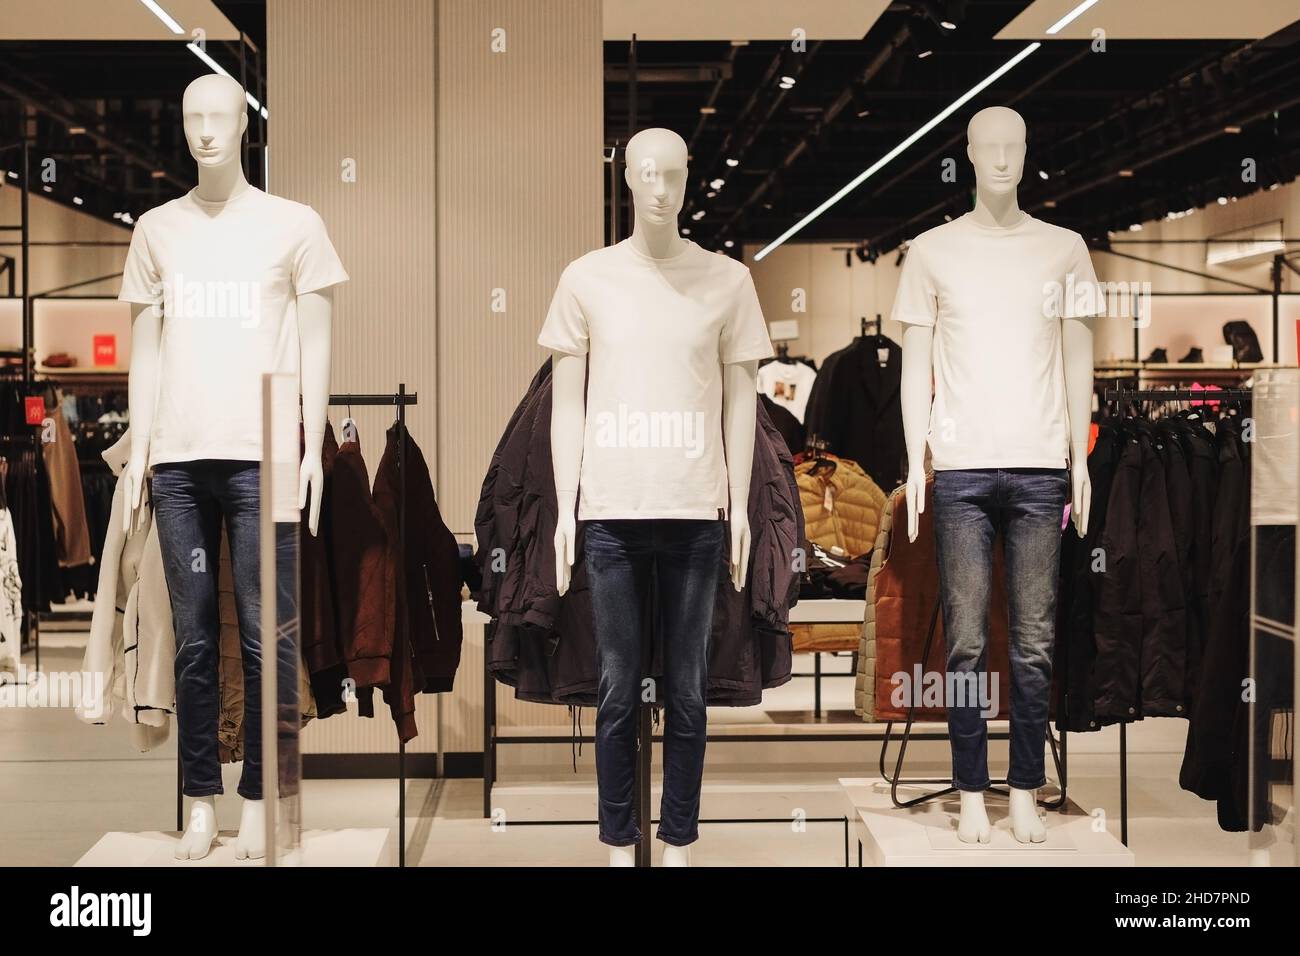 Los maniquíes masculinos de ropa informal se ponen de pie en una tienda de ropa. Maniquíes en el gran centro comercial. Foto de stock